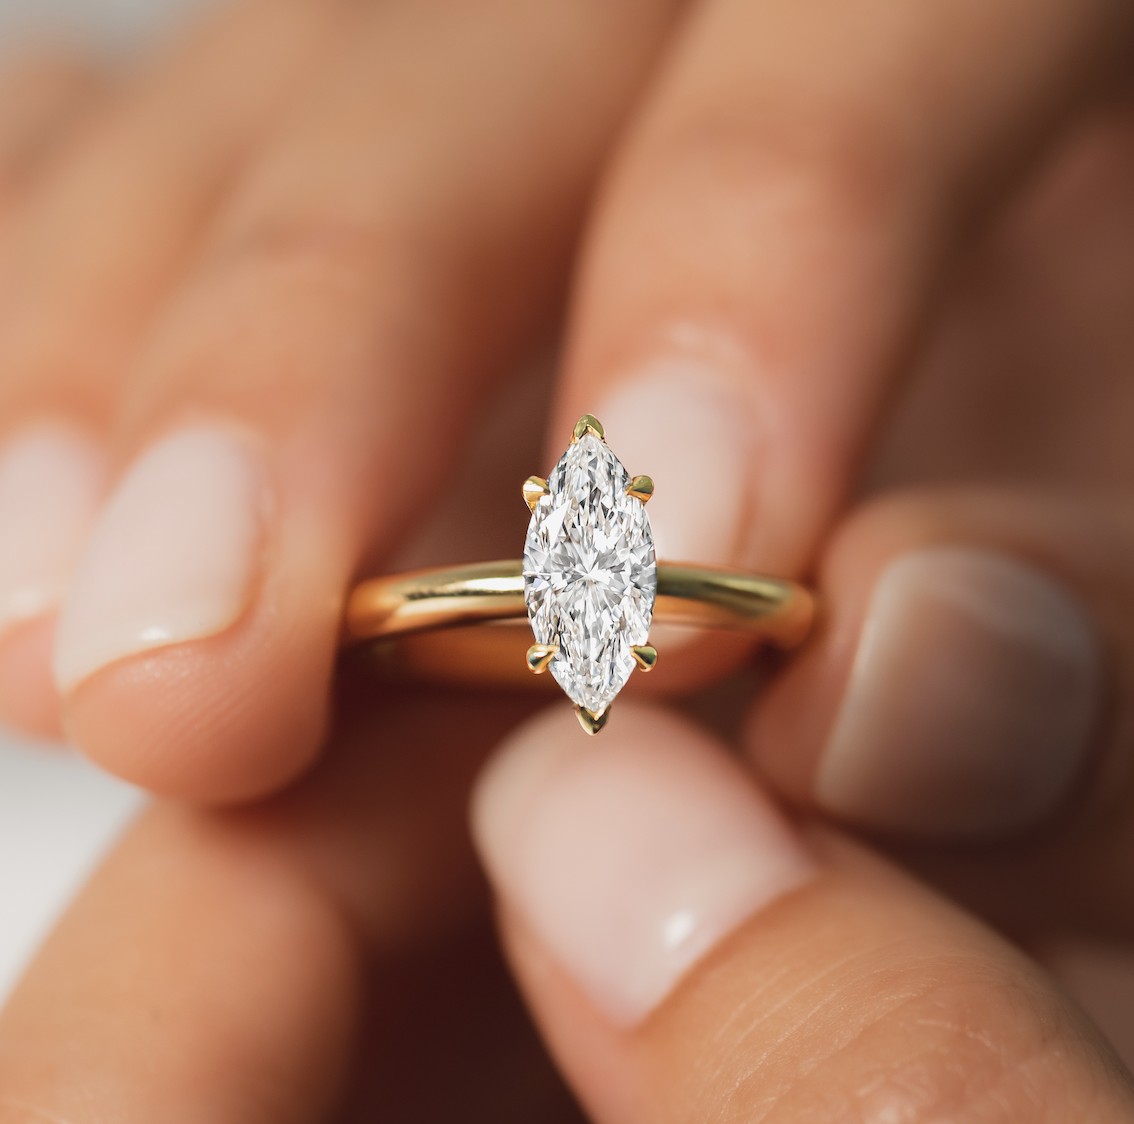 Diamond Engagement Rings - Solitaire & More | Shop Online Australia